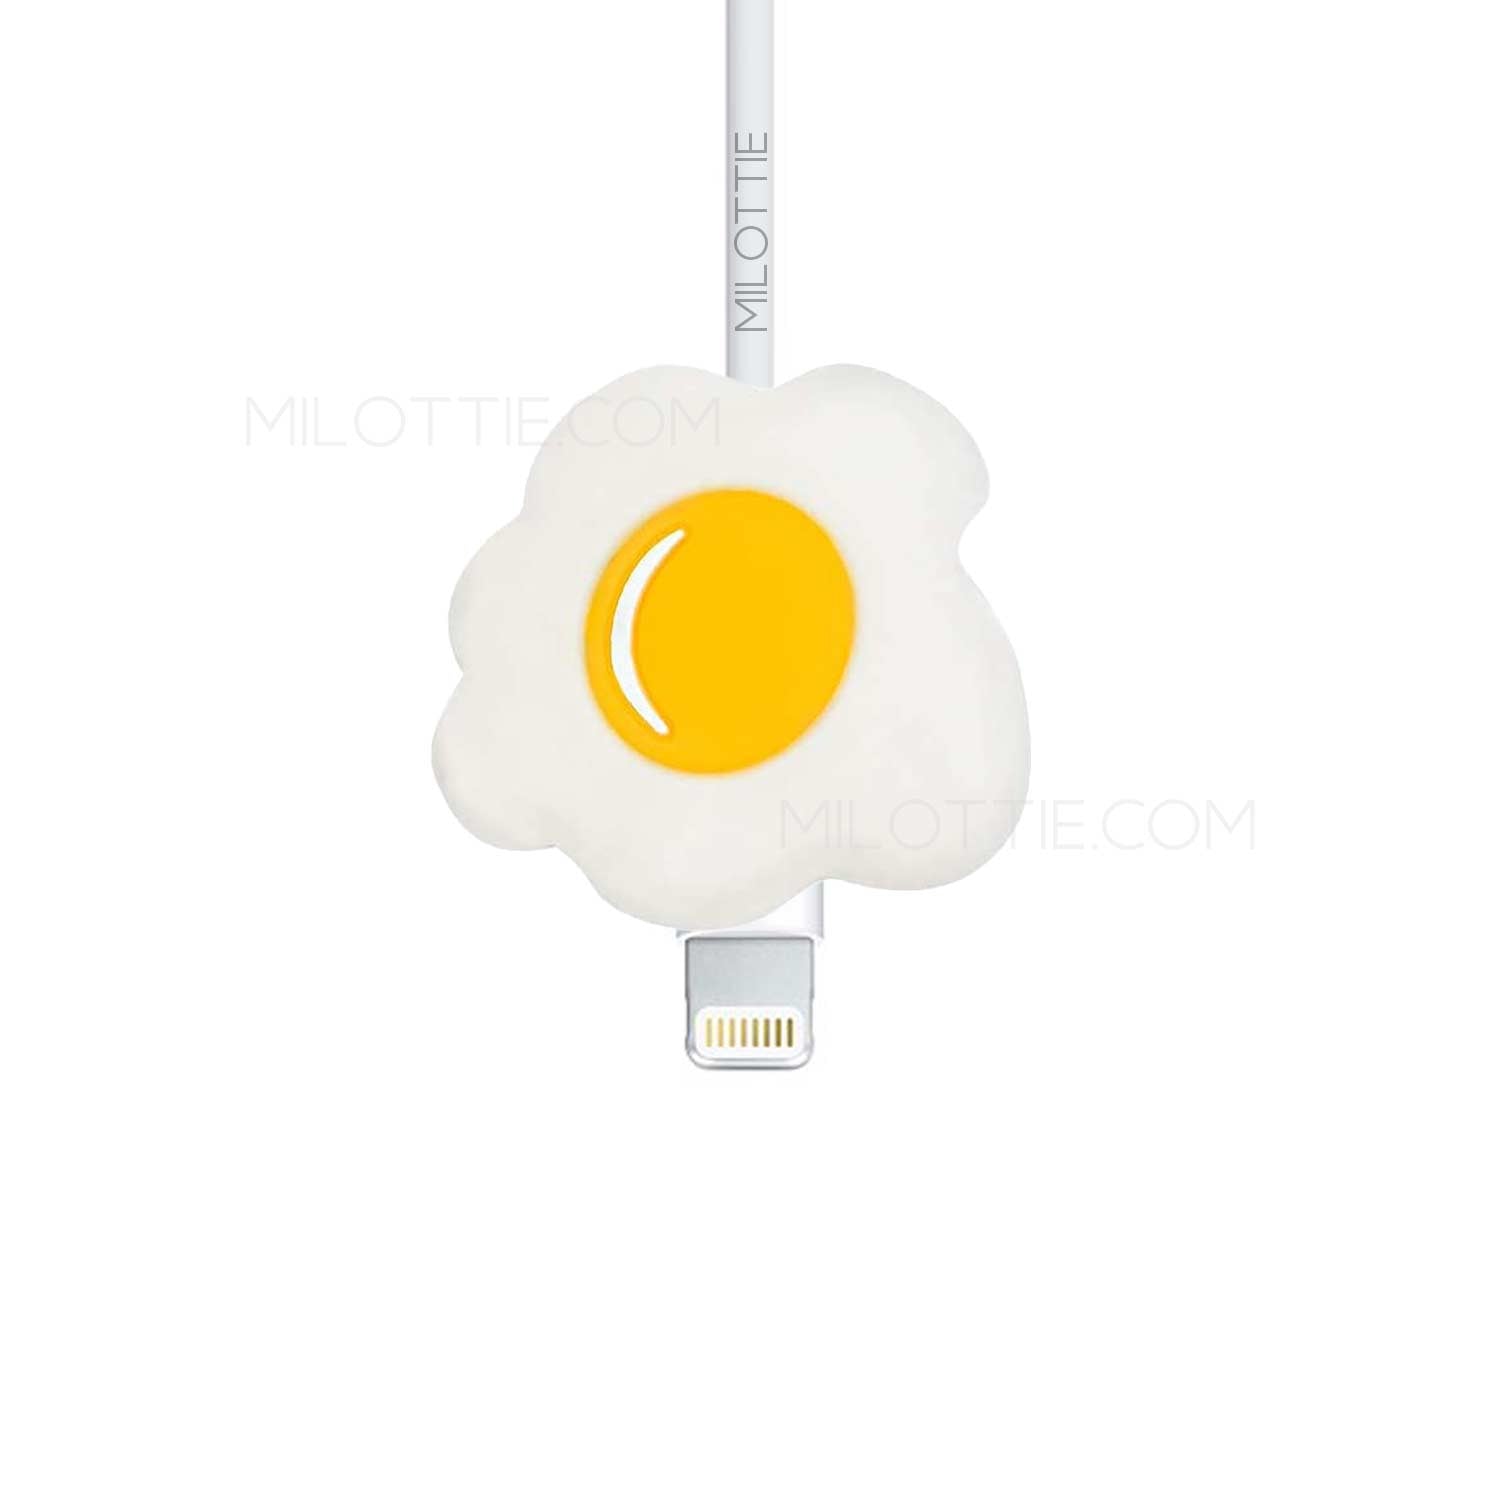 Egg Lightning cable - Milottie